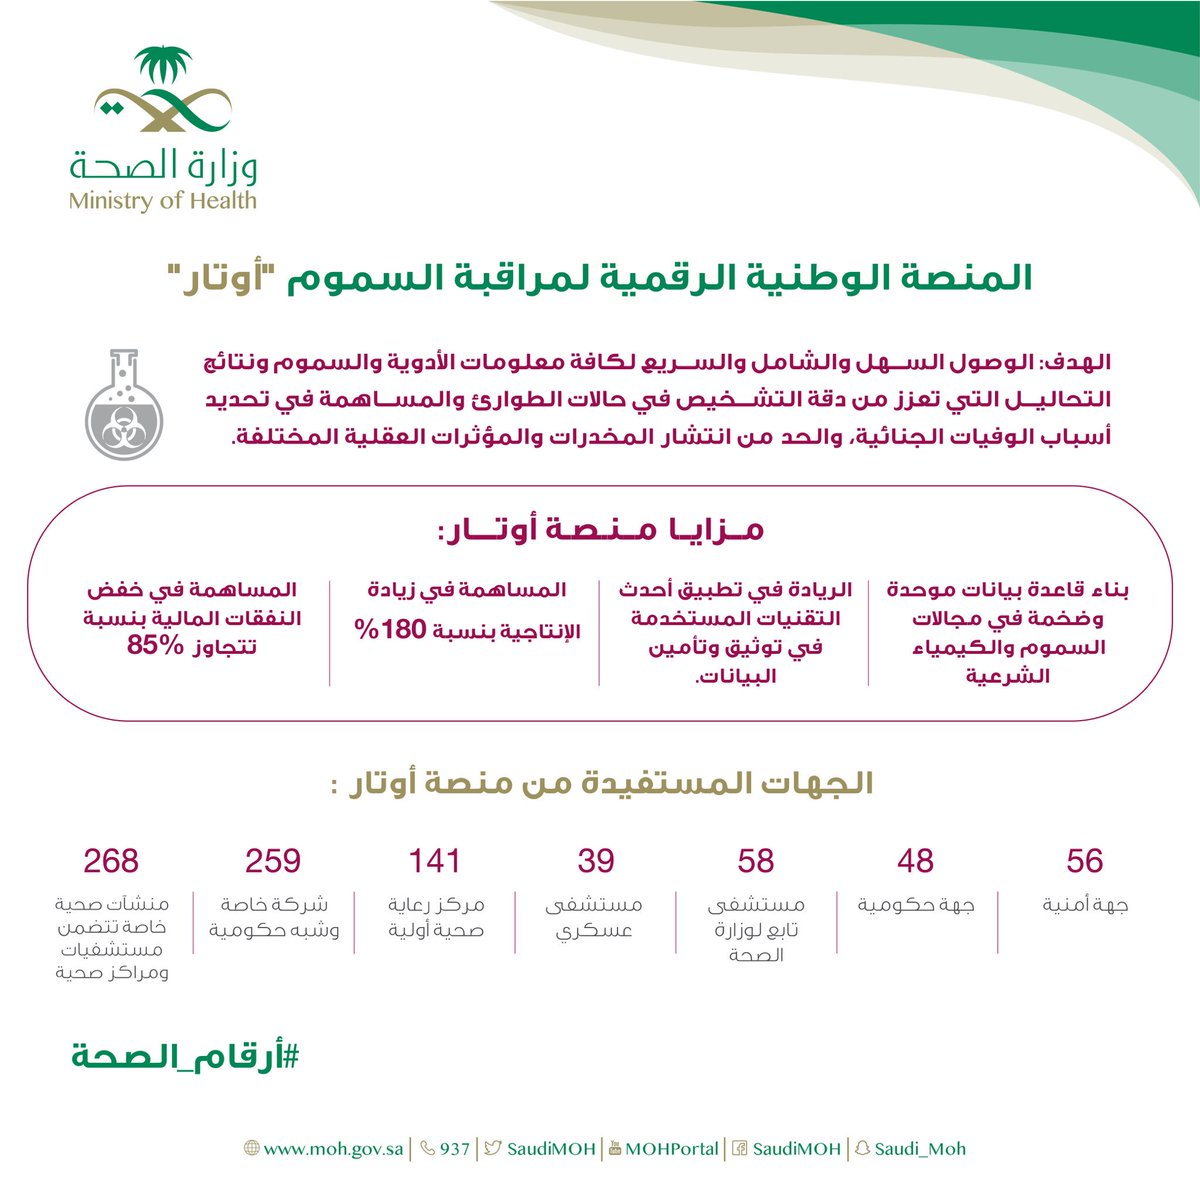 ووزارة الصحة السعودية على تويتر تهدف المنصة الرقمية الوطنية لمكافحة السموم أوتار إلى توفير وصول سريع إلى جميع معلومات الأدوية والسموم ونتائج الاختبارات التي تعزز